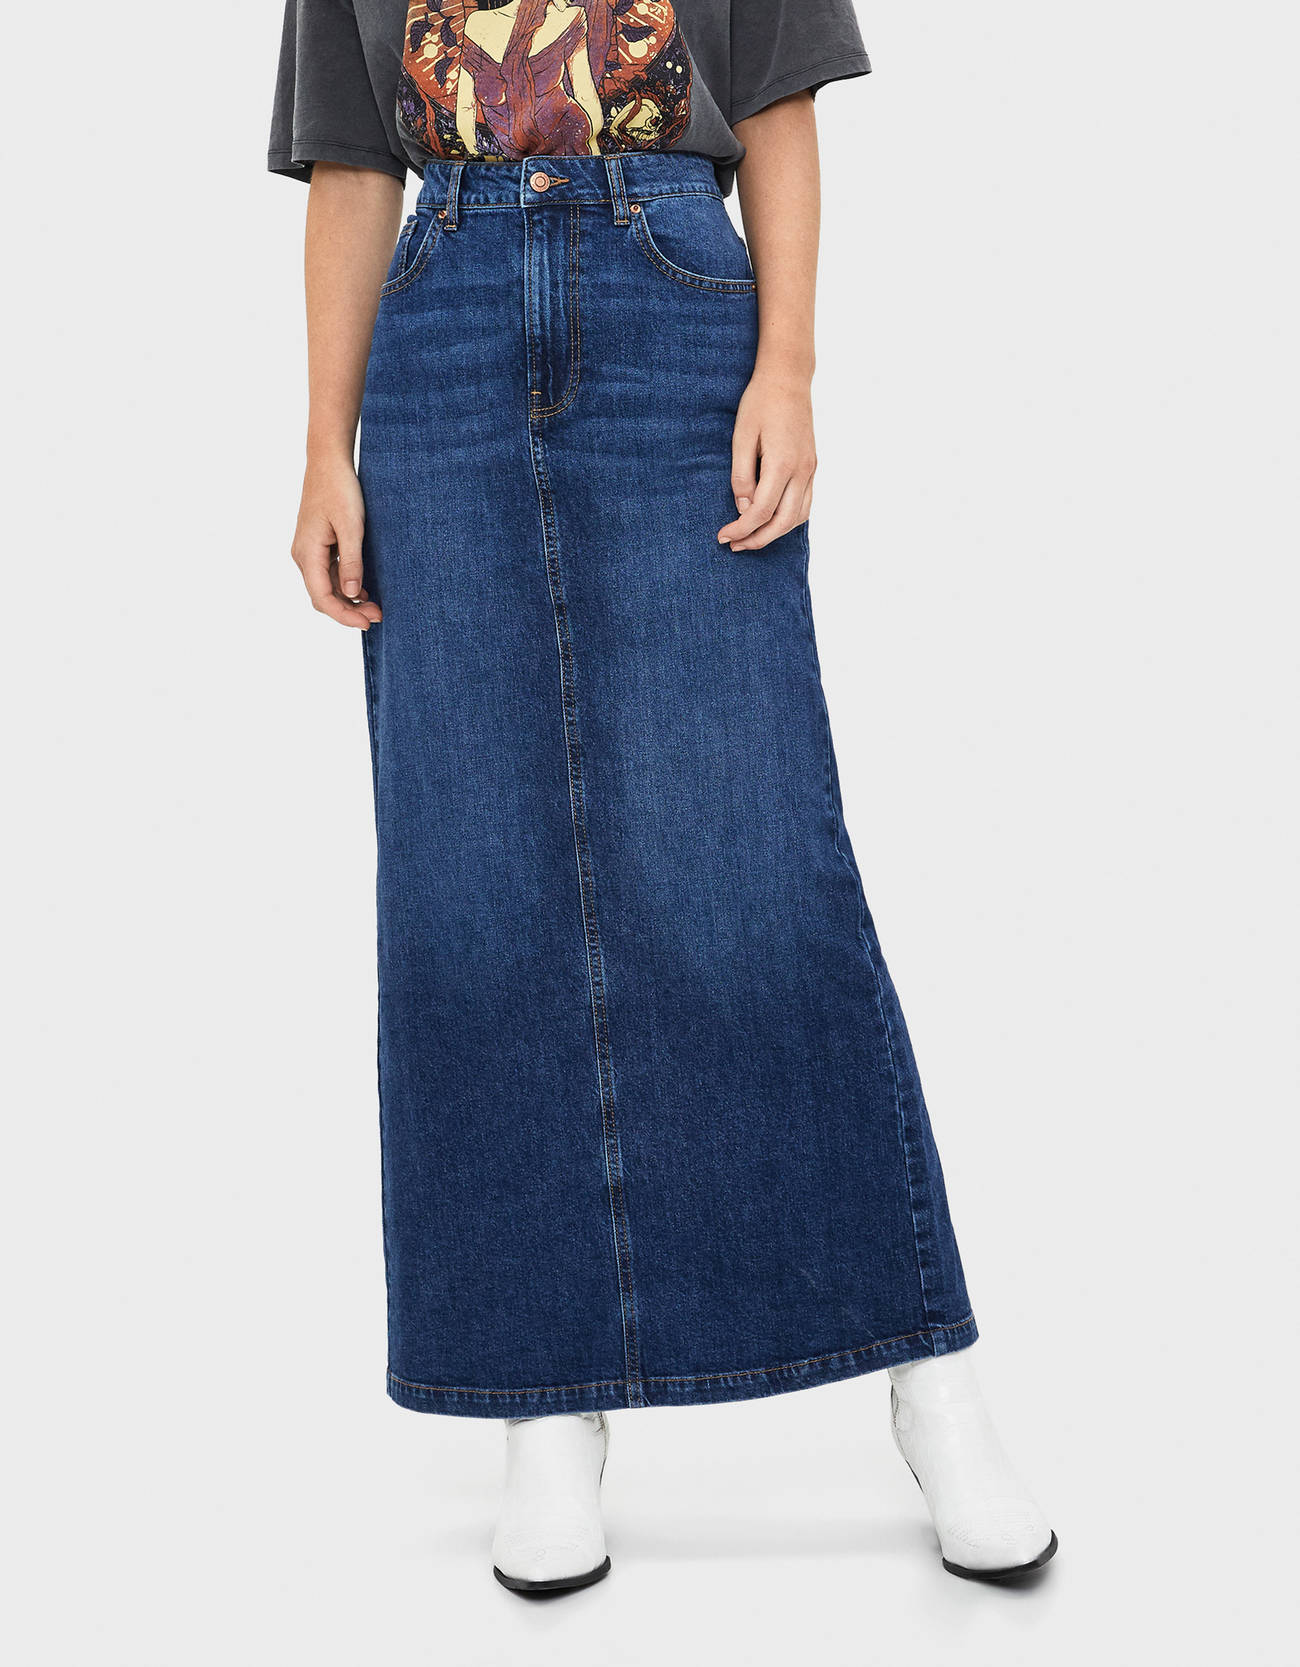 Длинная джинсовая юбка купить